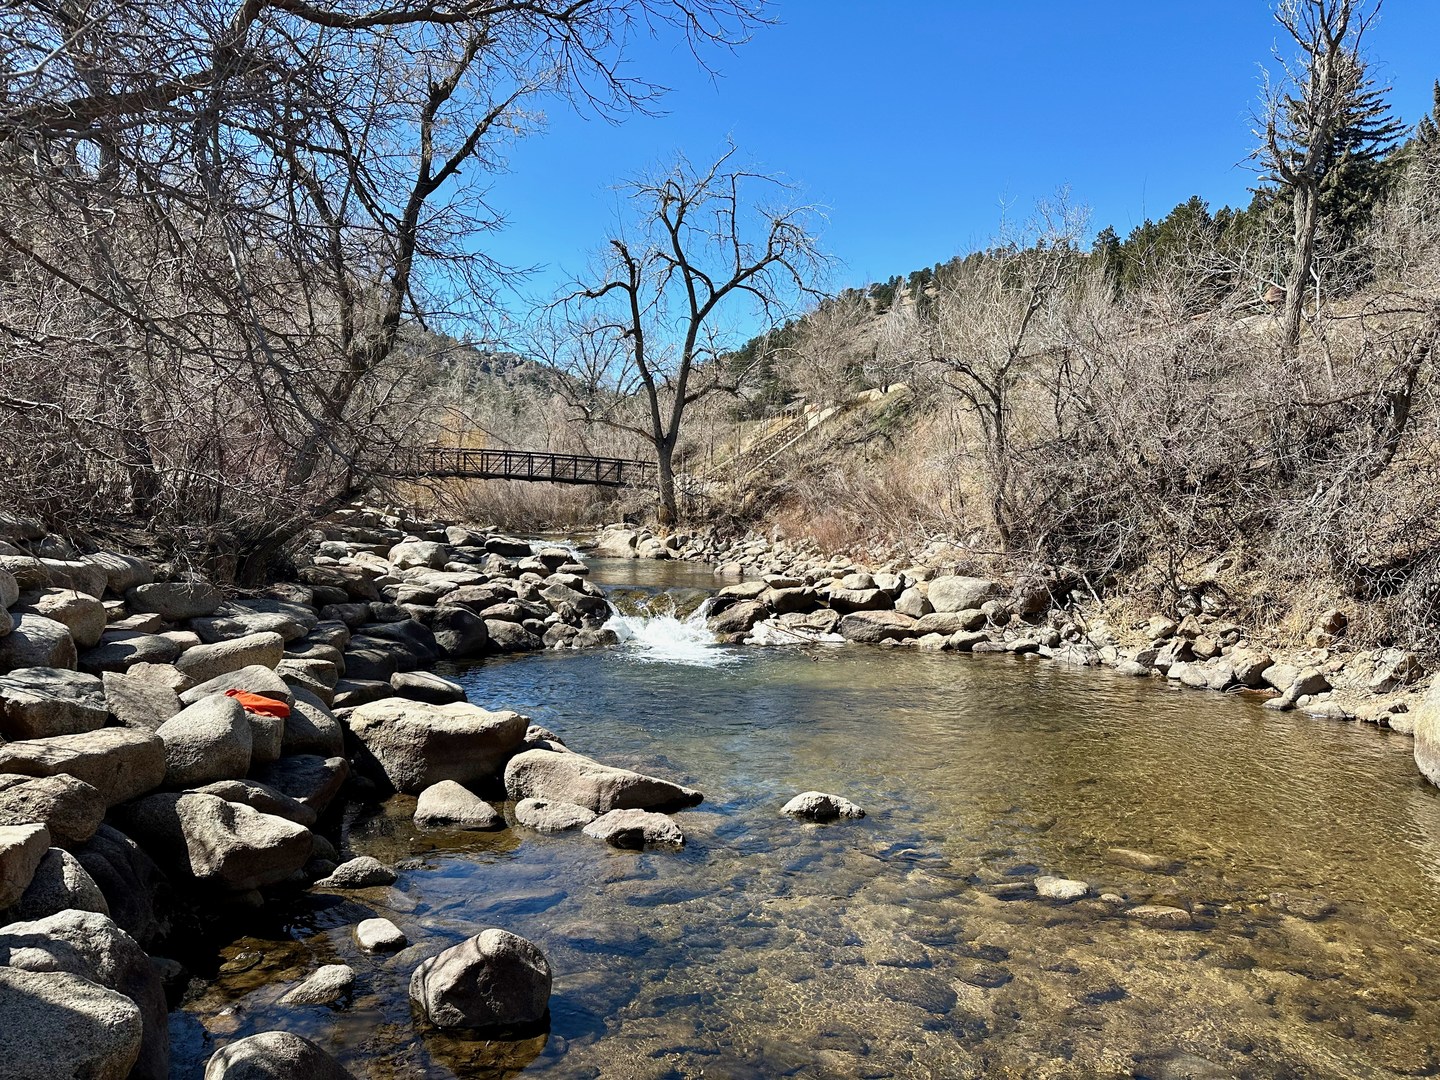 Boulder Creek Path